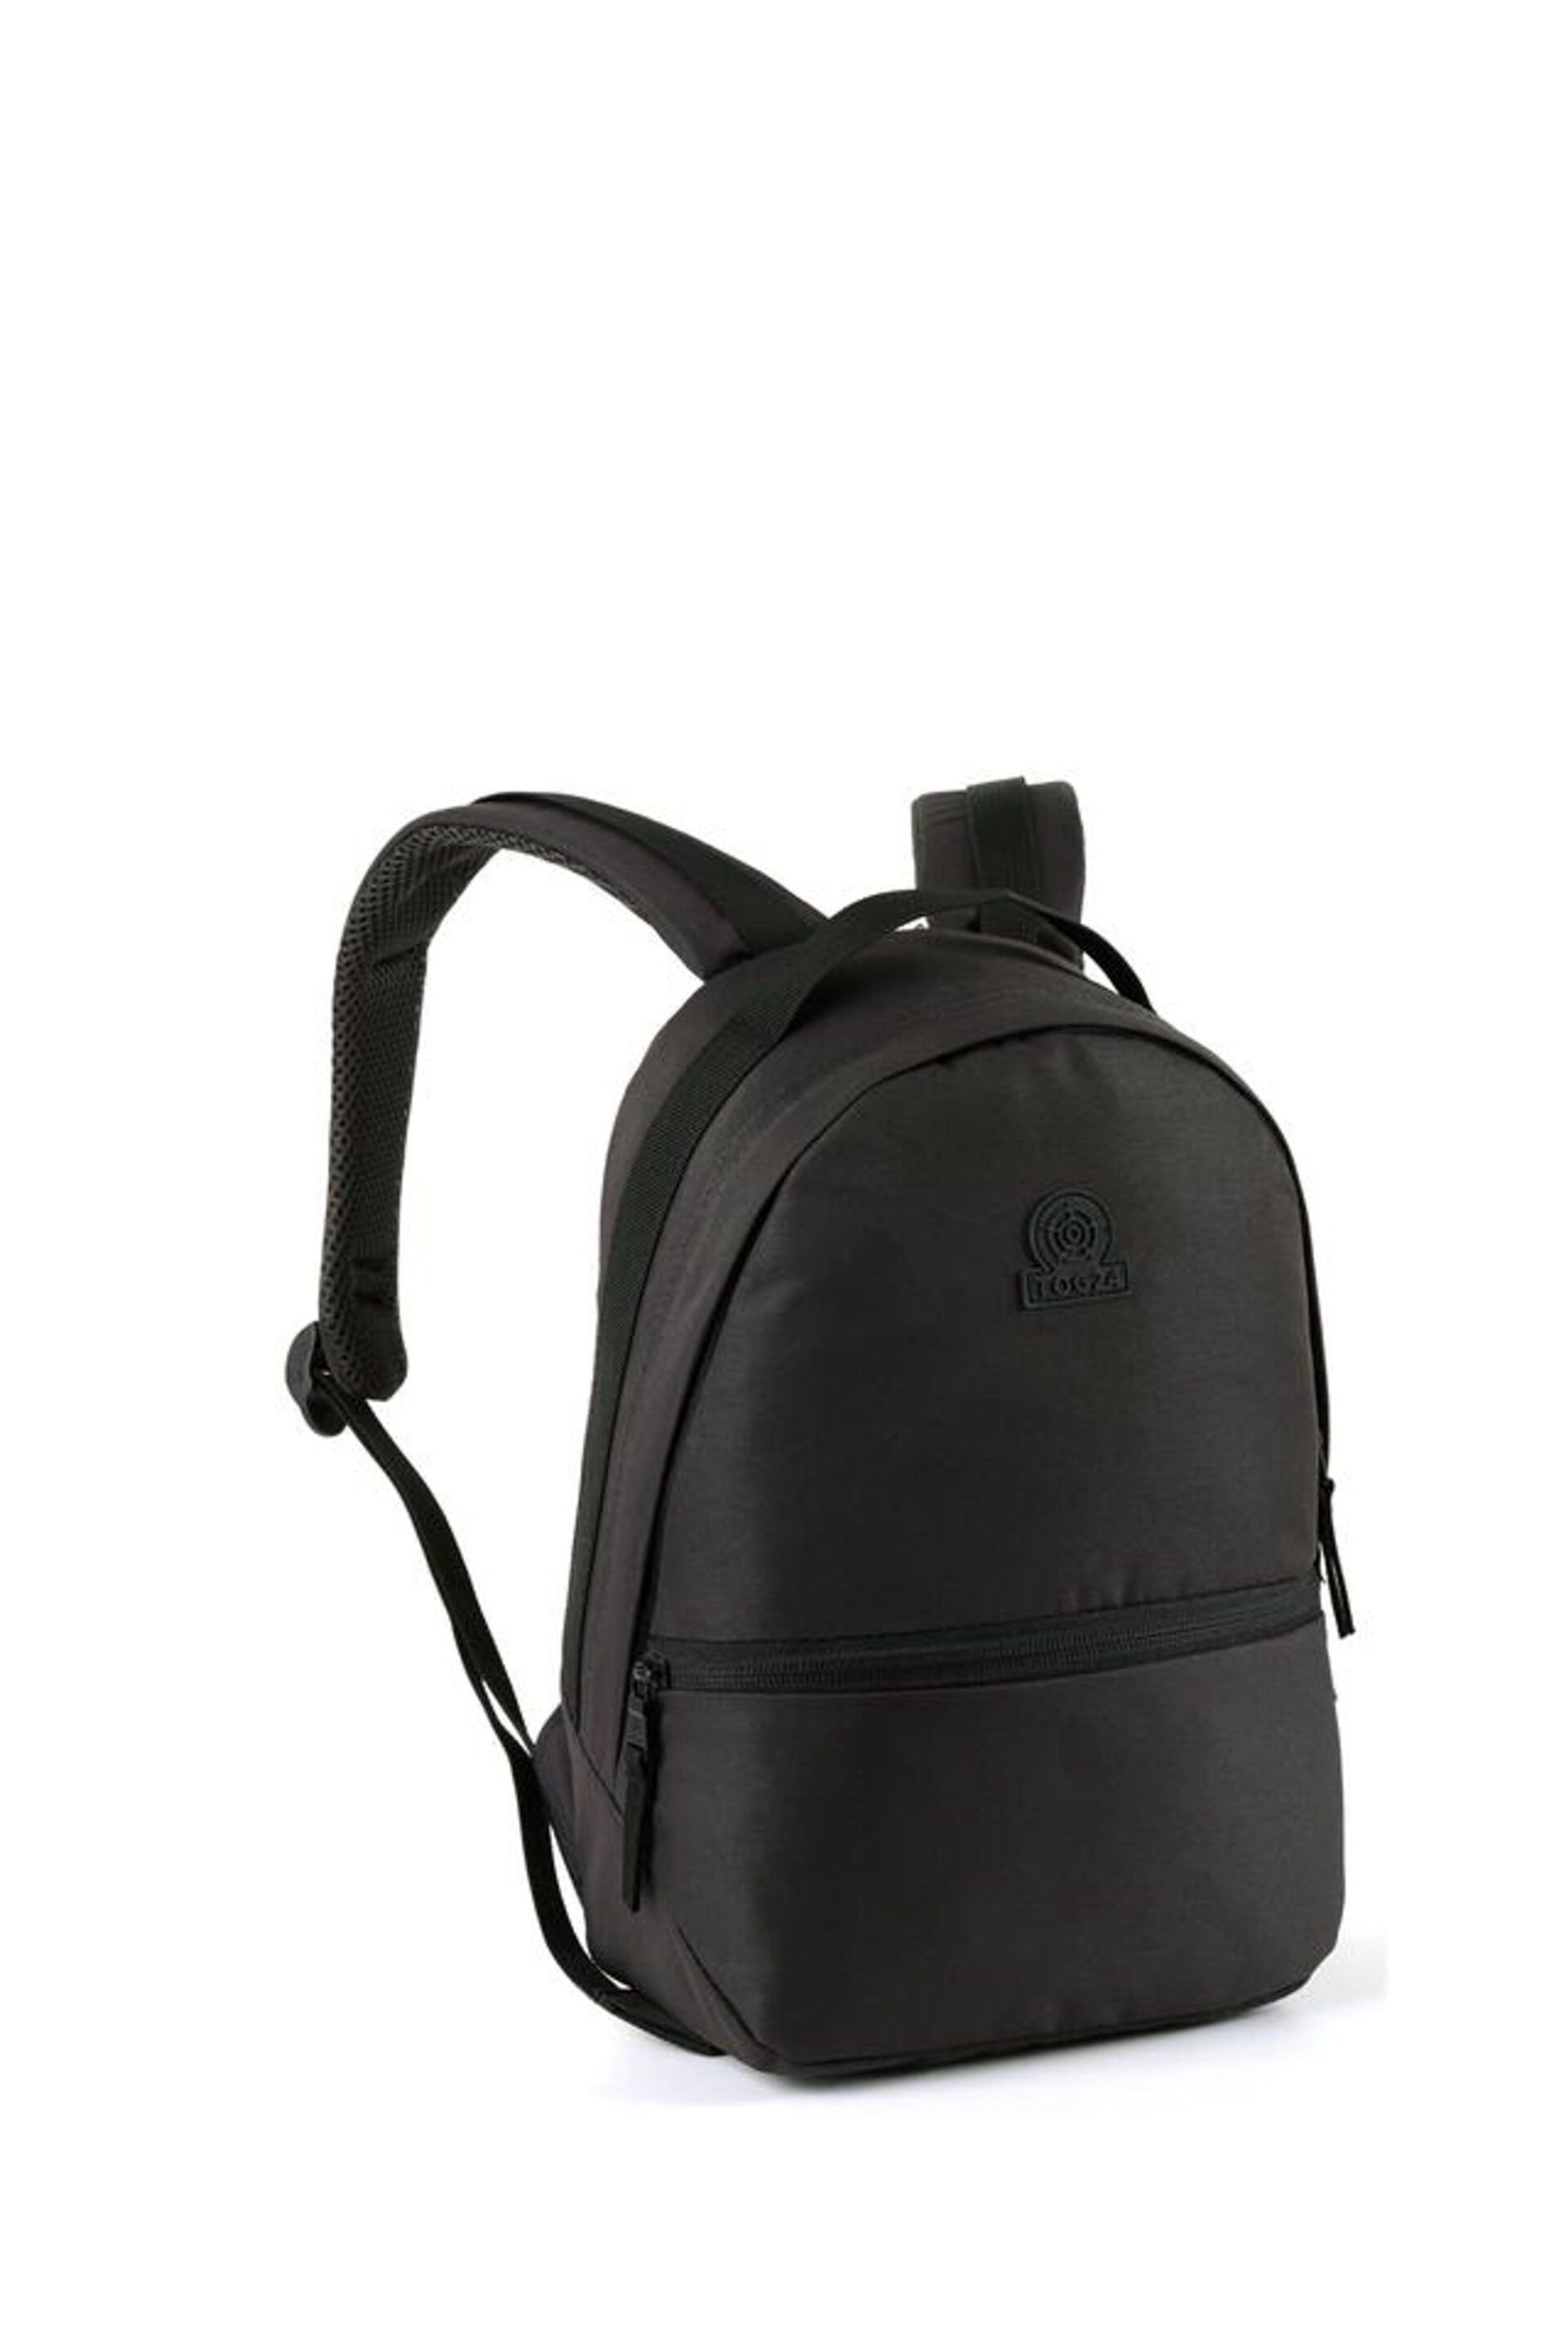 Tog 24 Black Exley Backpack - Image 2 of 7